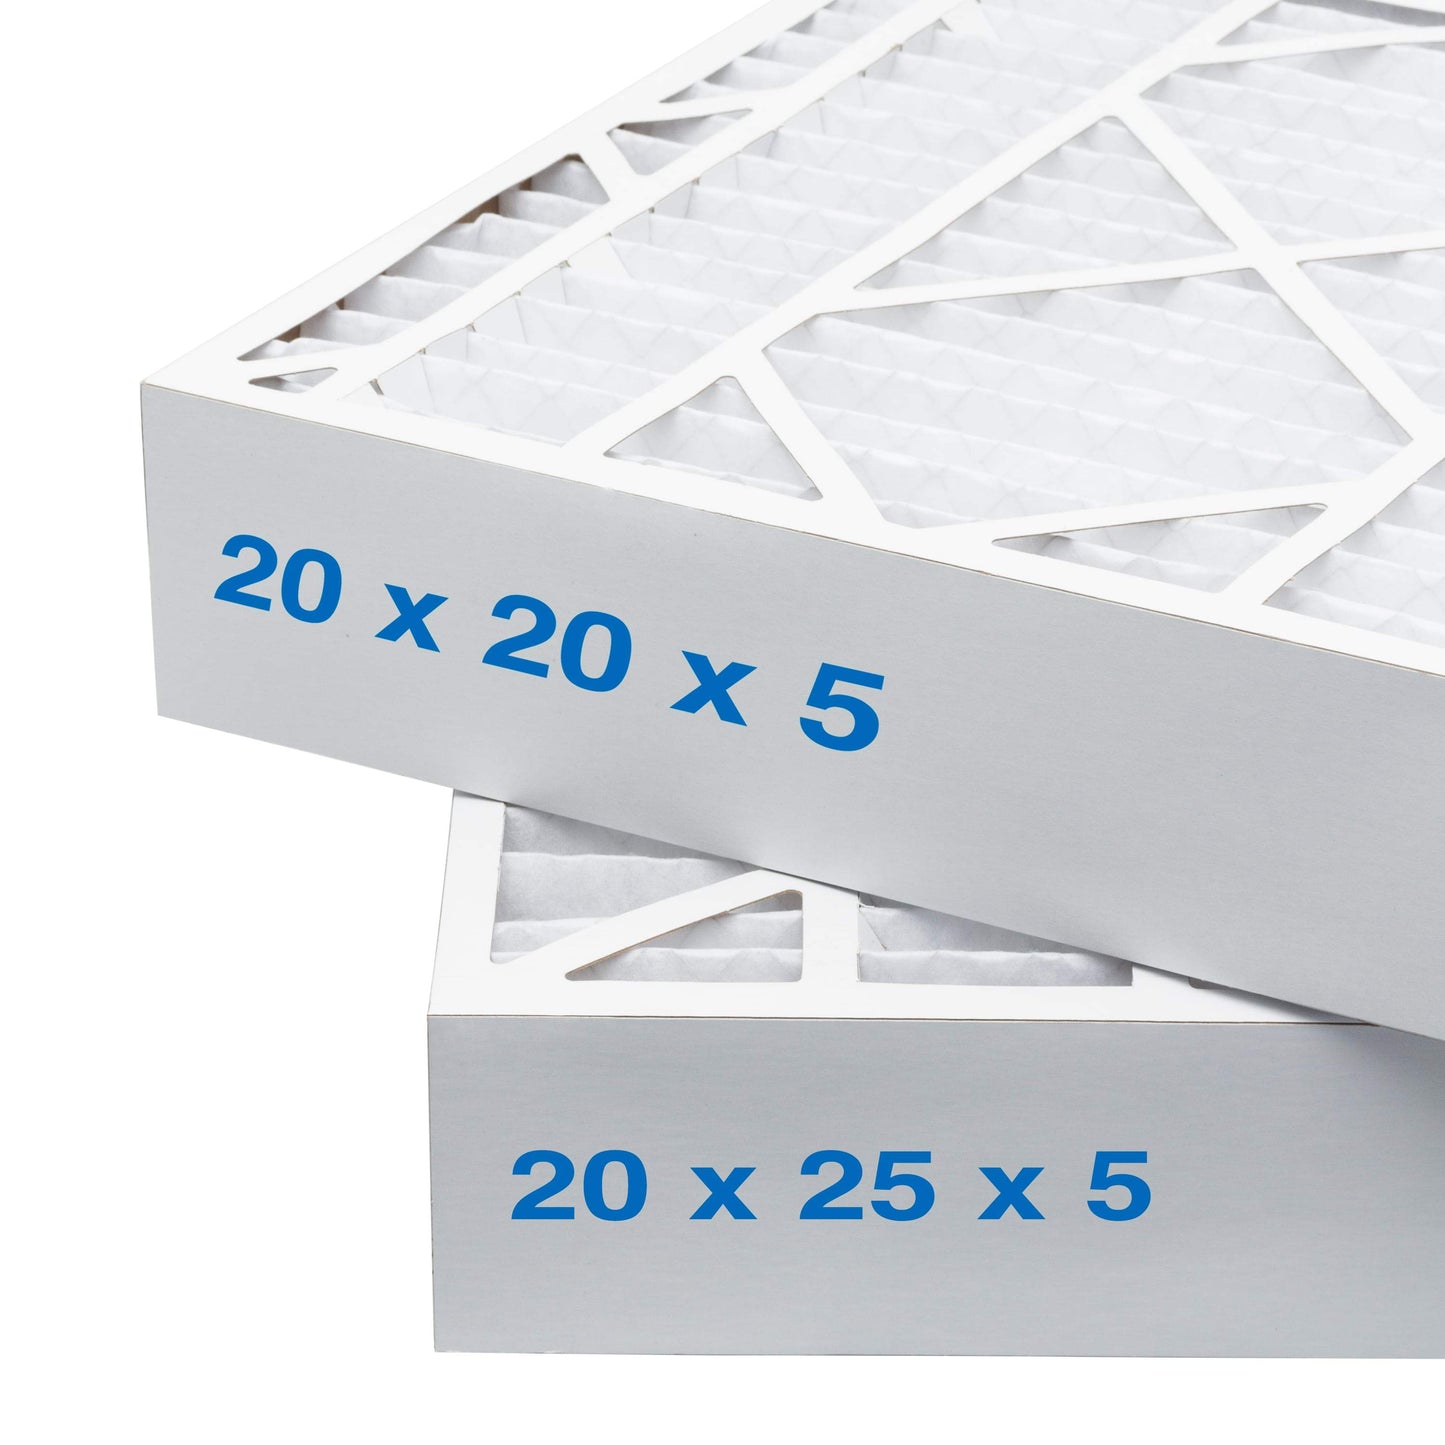 16x25x5 Air Filter - AC Furnace Filter